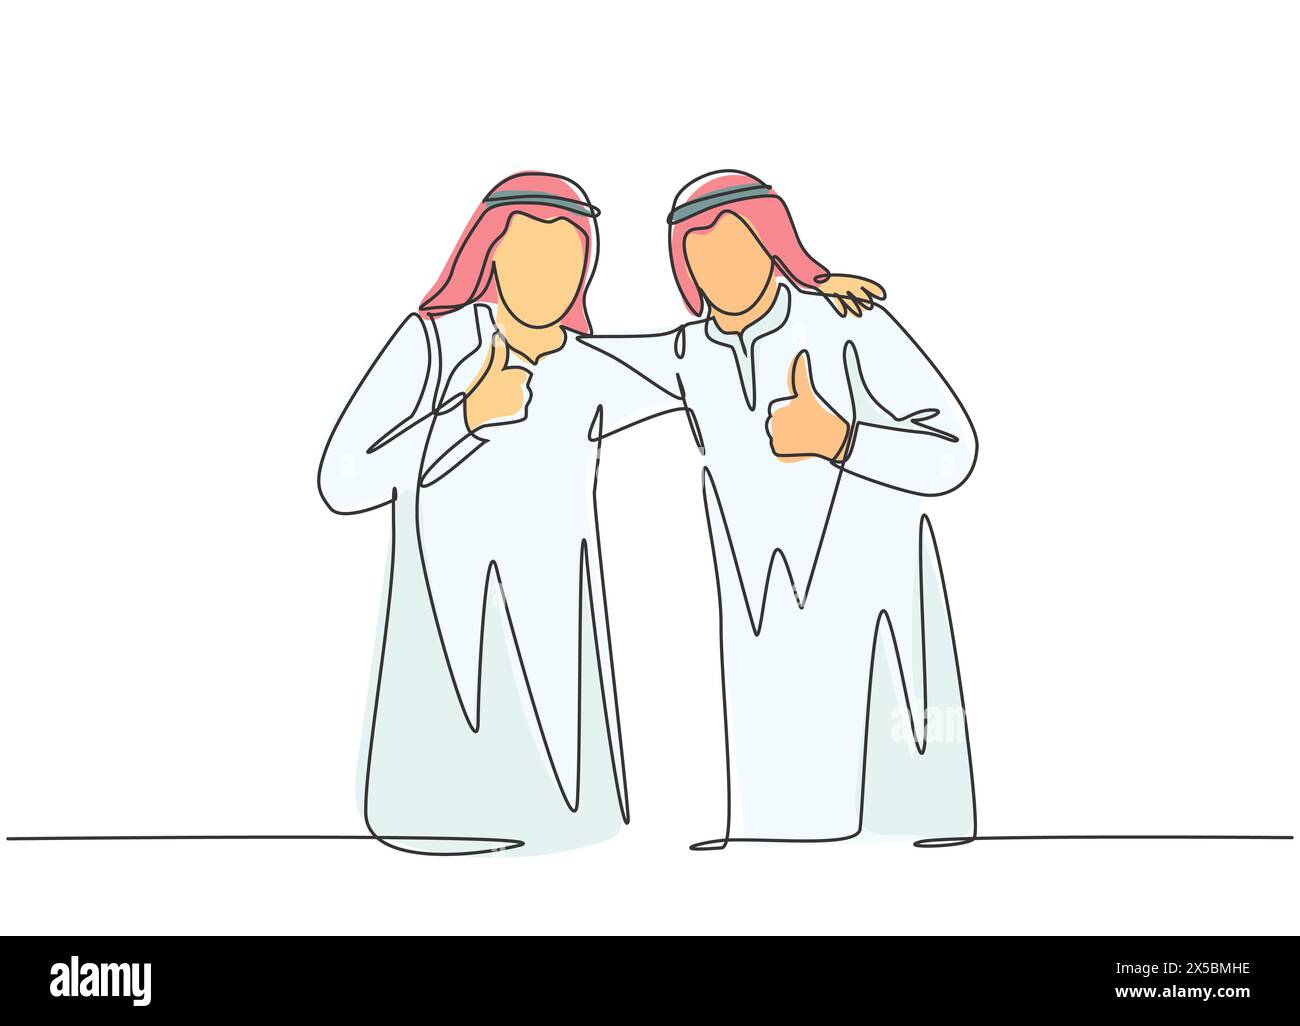 Eine einzige Zeichnung von jungen glücklichen muslimischen Geschäftsmann Daumen nach oben Geste mit Kollegen. Saudi-Arabien Tuch shmag, kandora, Kopftuch, Khobe Stock Vektor